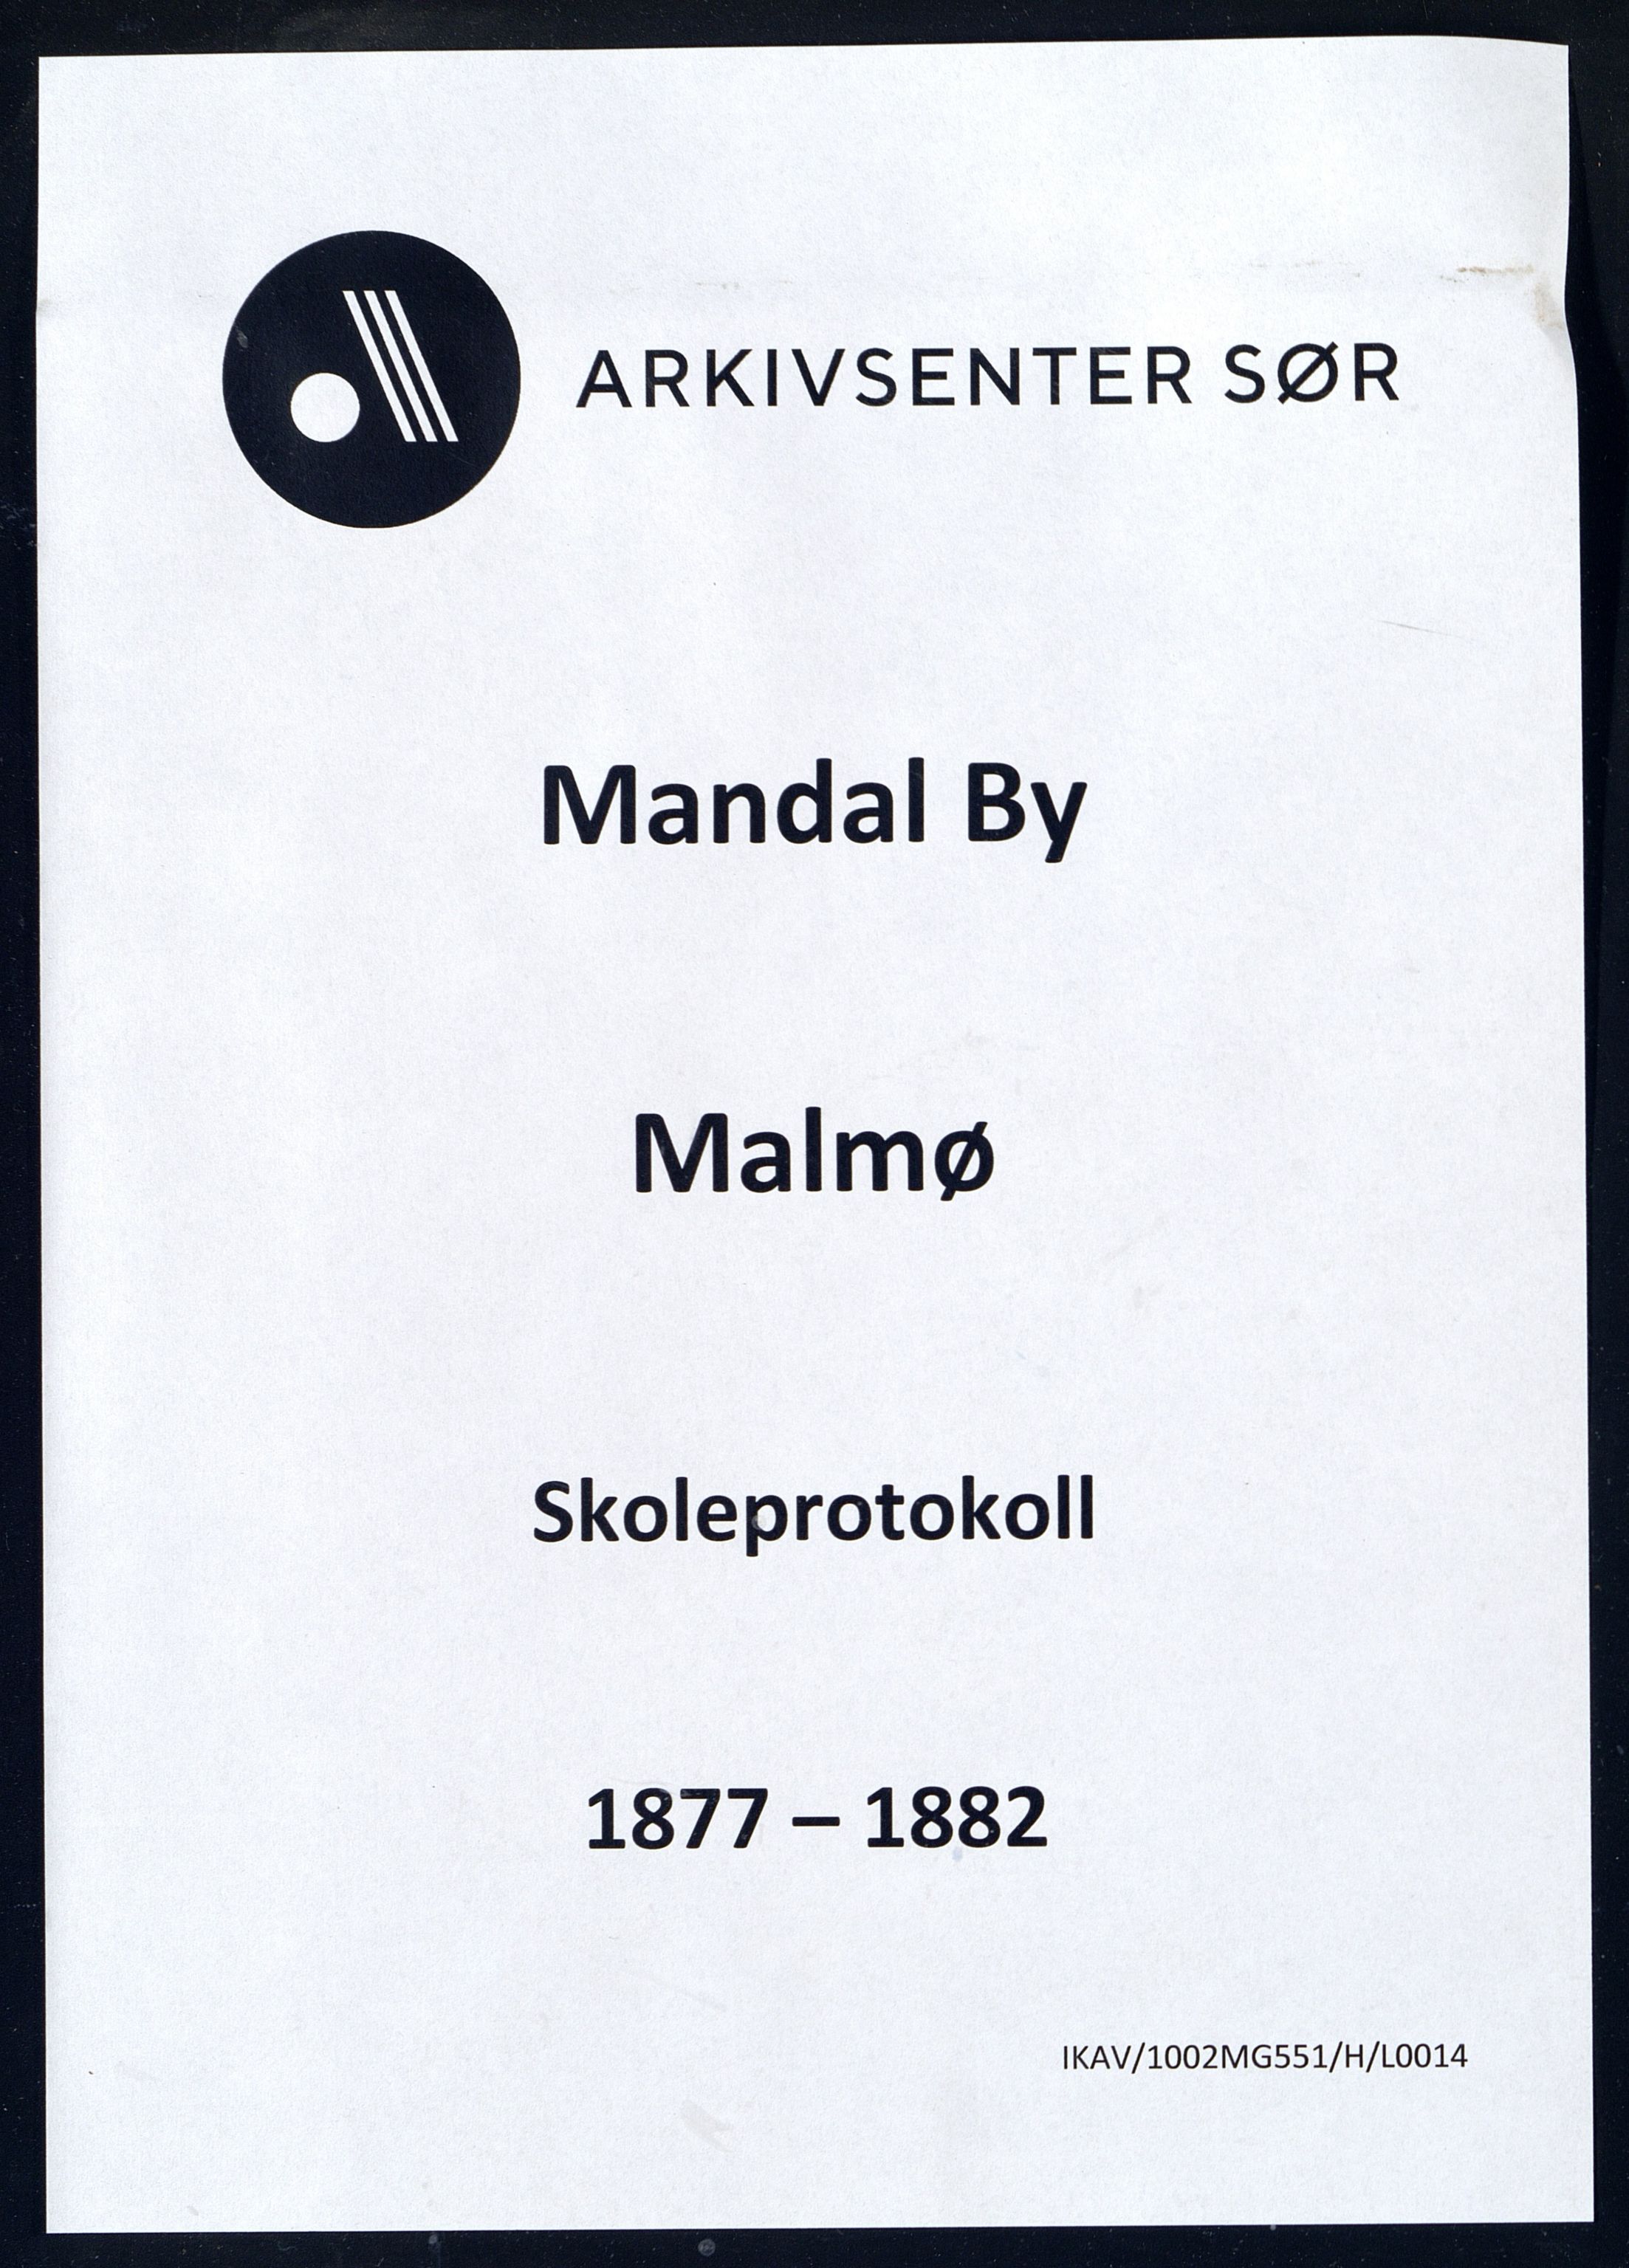 Mandal By - Mandal Allmueskole/Folkeskole/Skole, IKAV/1002MG551/H/L0014: Skoleprotokoll, 1877-1882